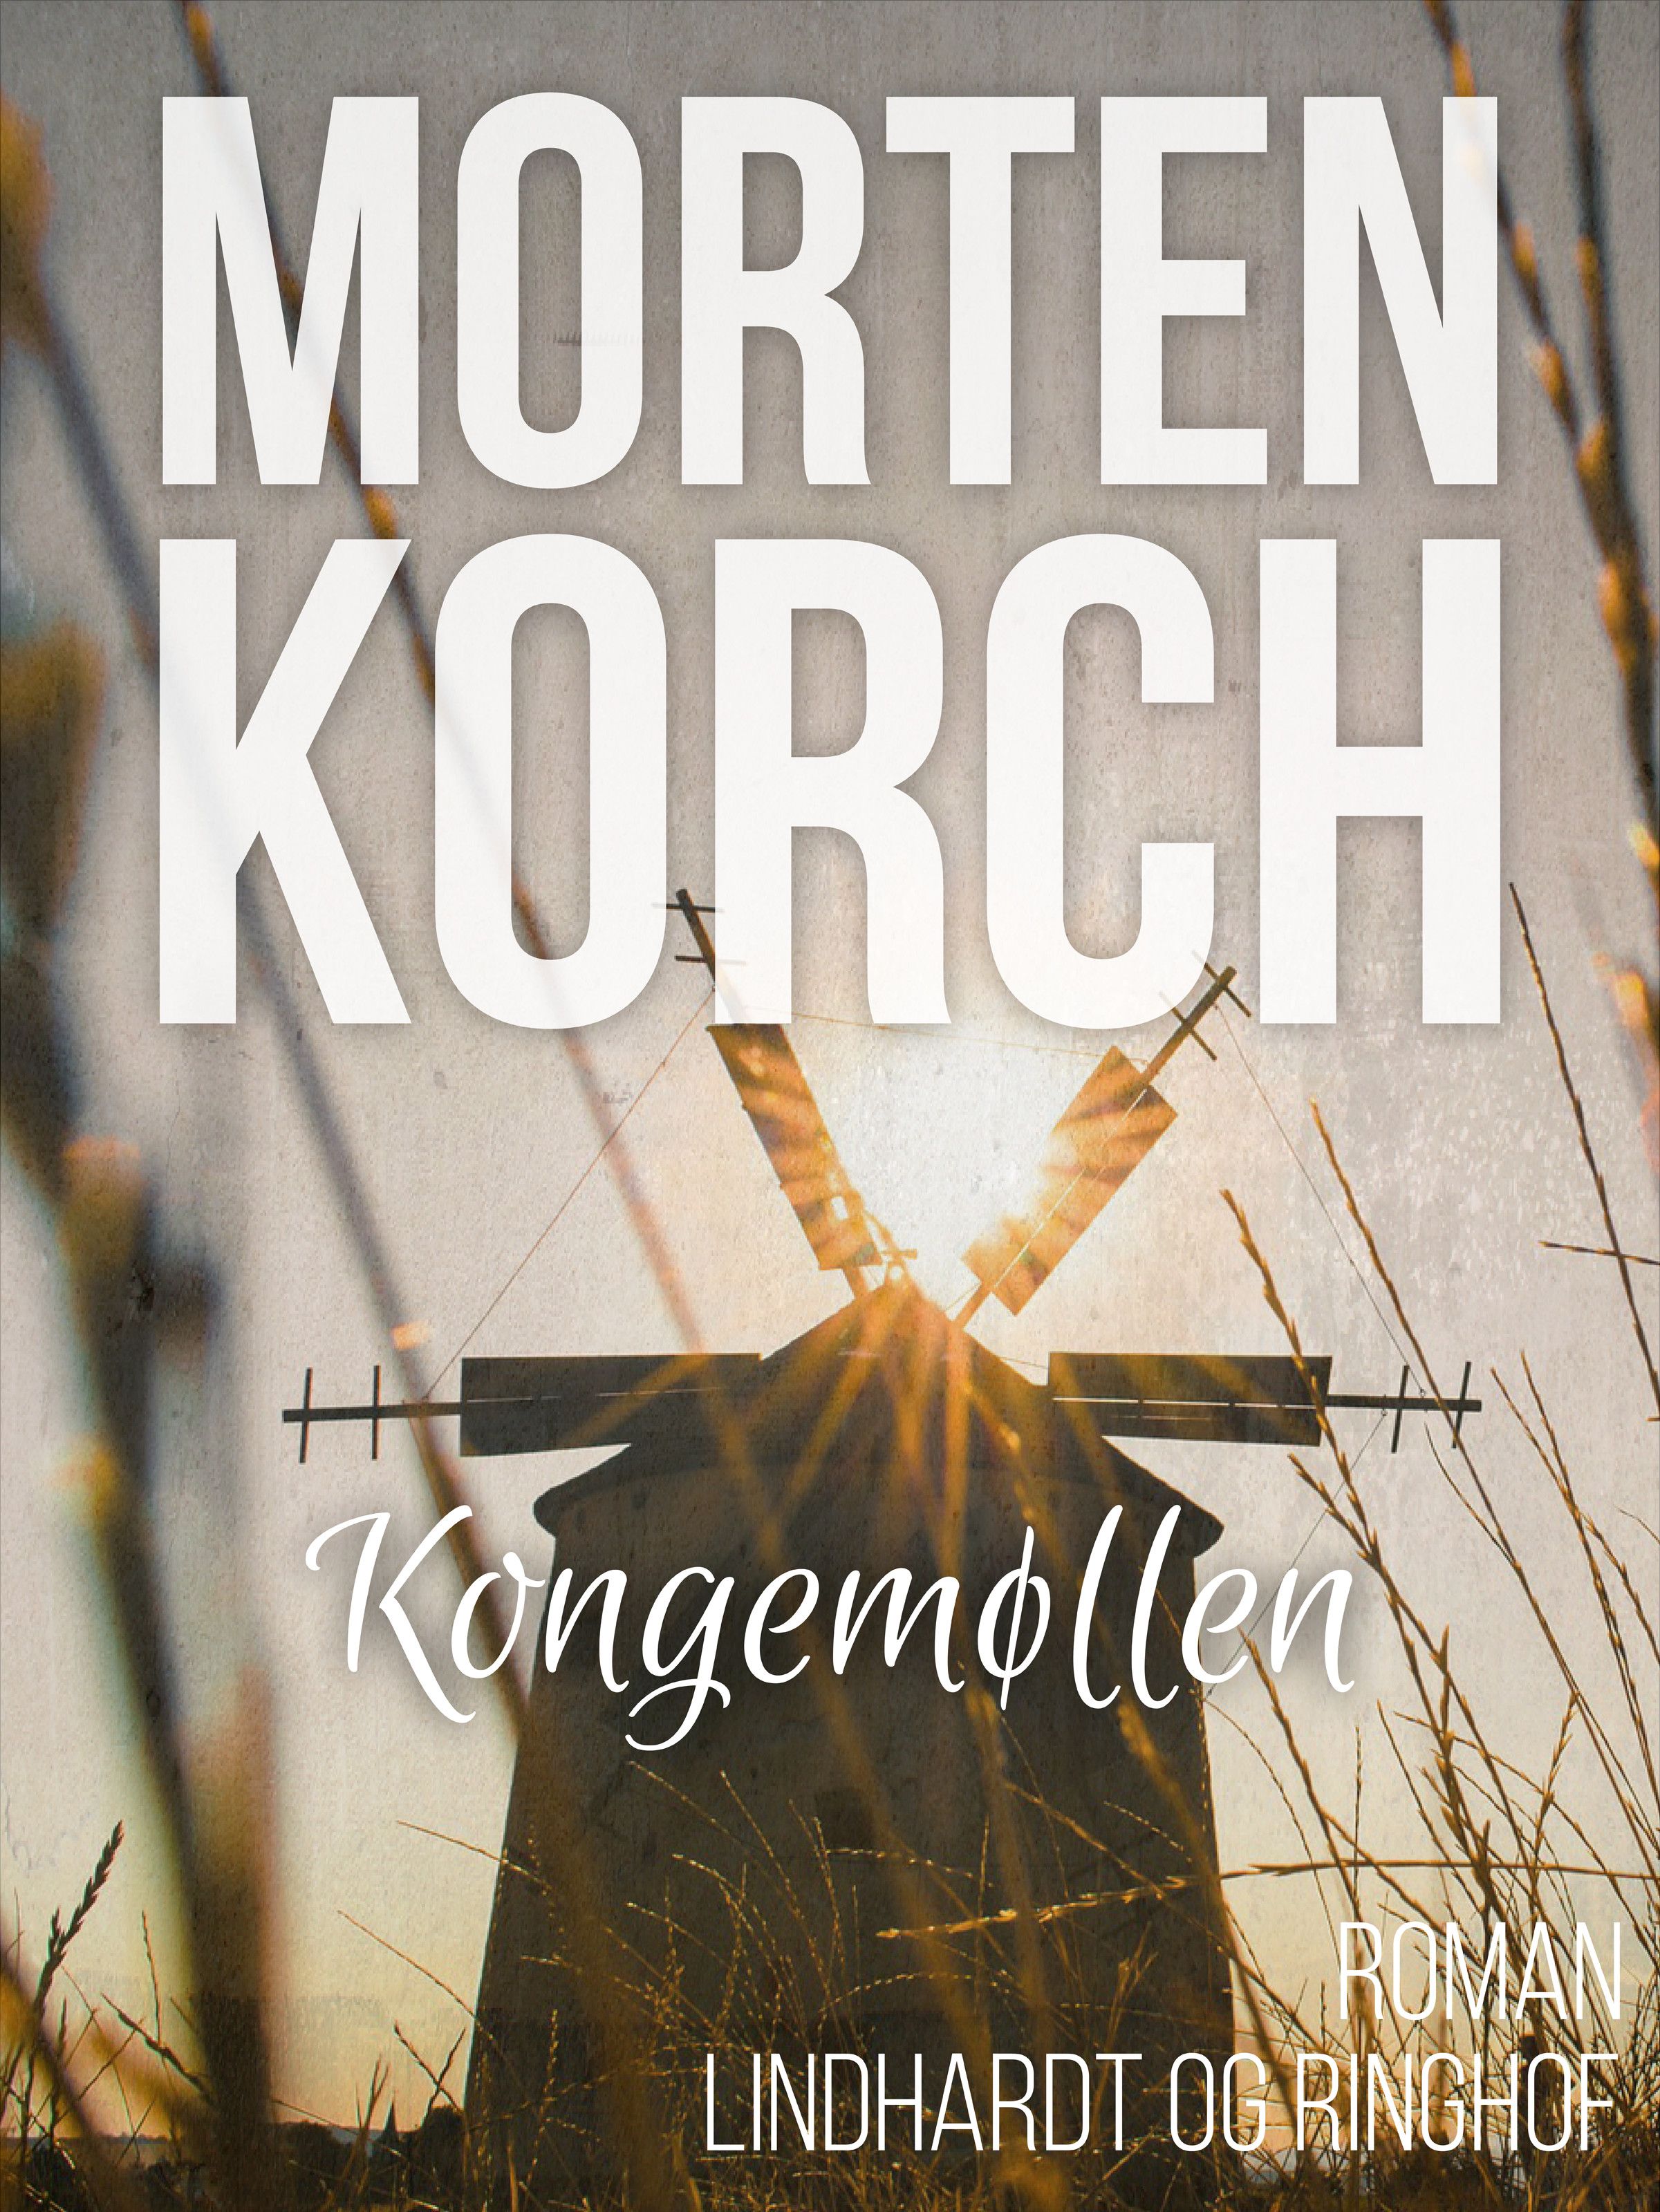 Kongemøllen, lydbog af Morten Korch